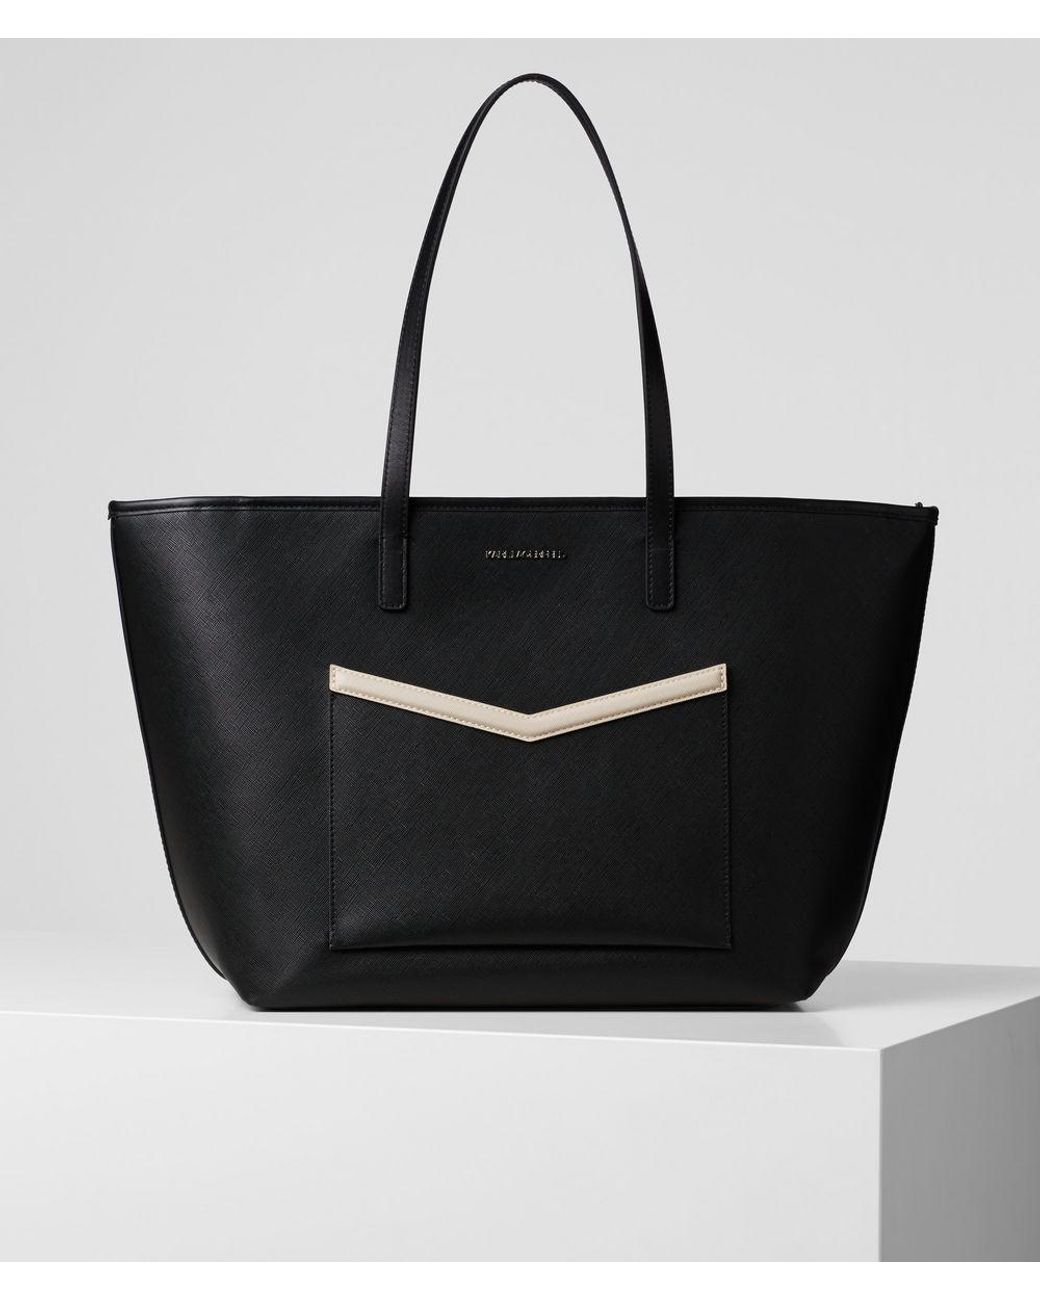 Karl Lagerfeld K/mau Tote Bag in Black - Lyst